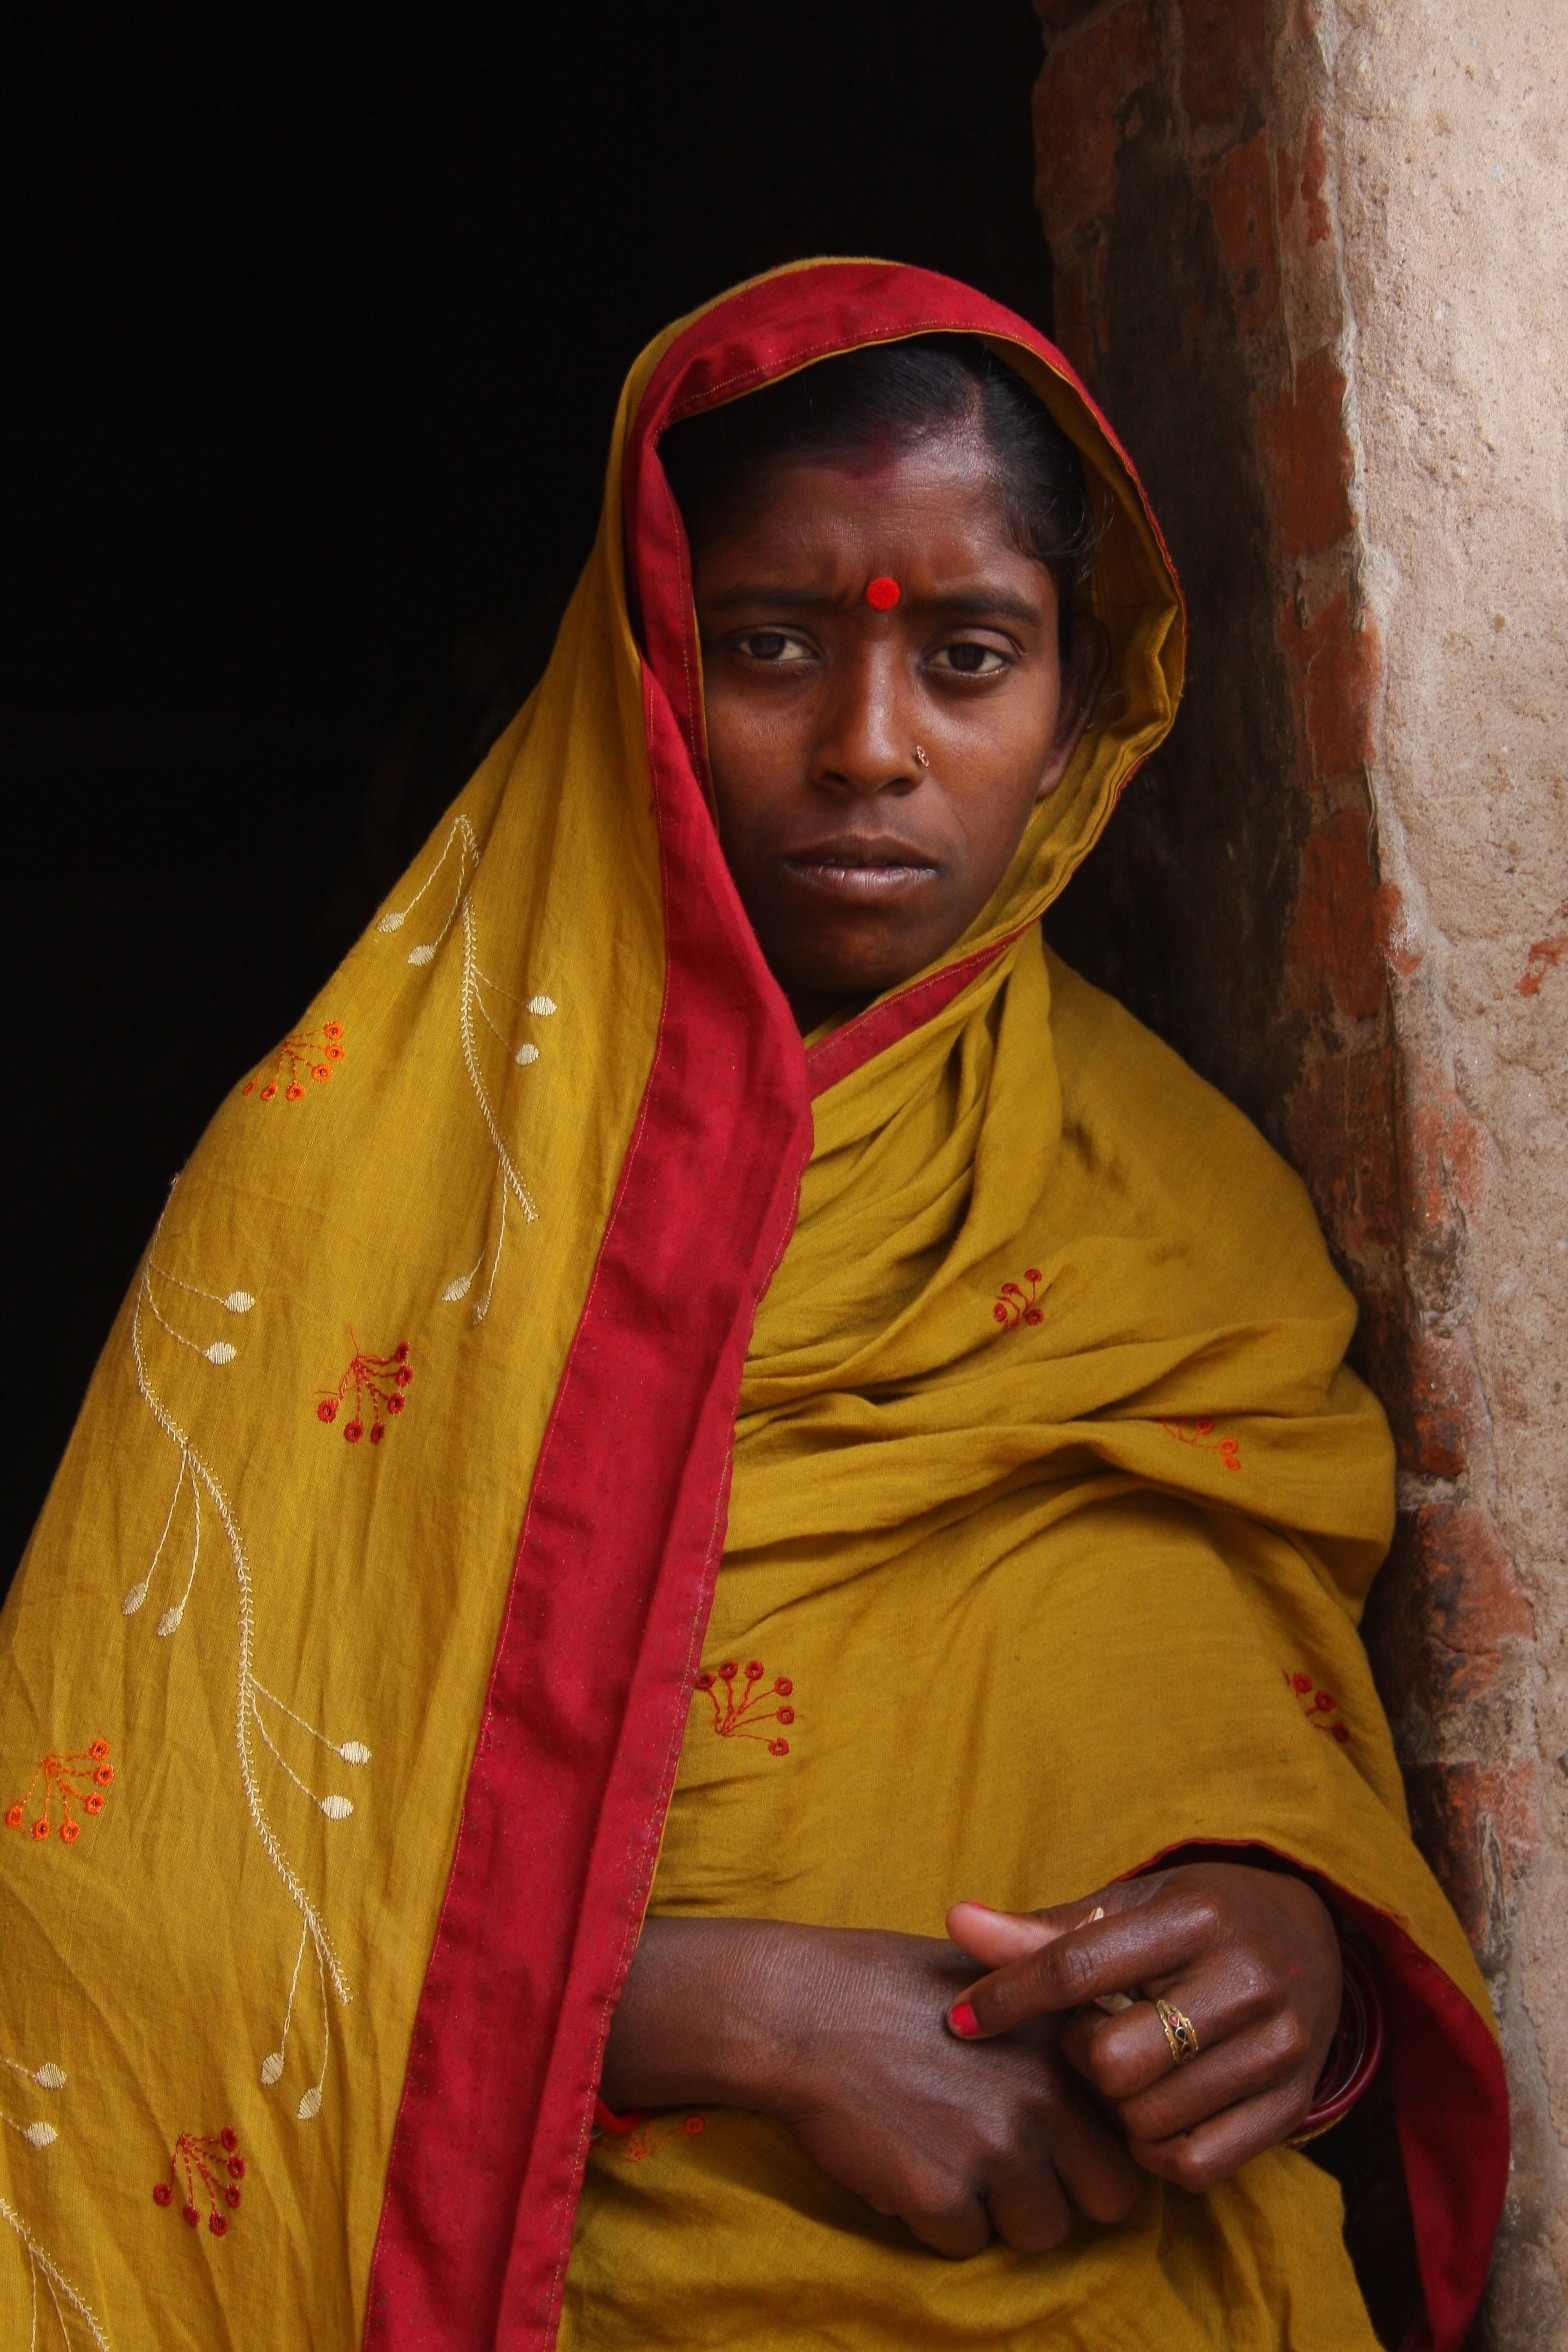 Mulheres na Índia ainda sofrem com tabus ligados à menstruação. (Foto: Sylvester DSouza/Unsplash)